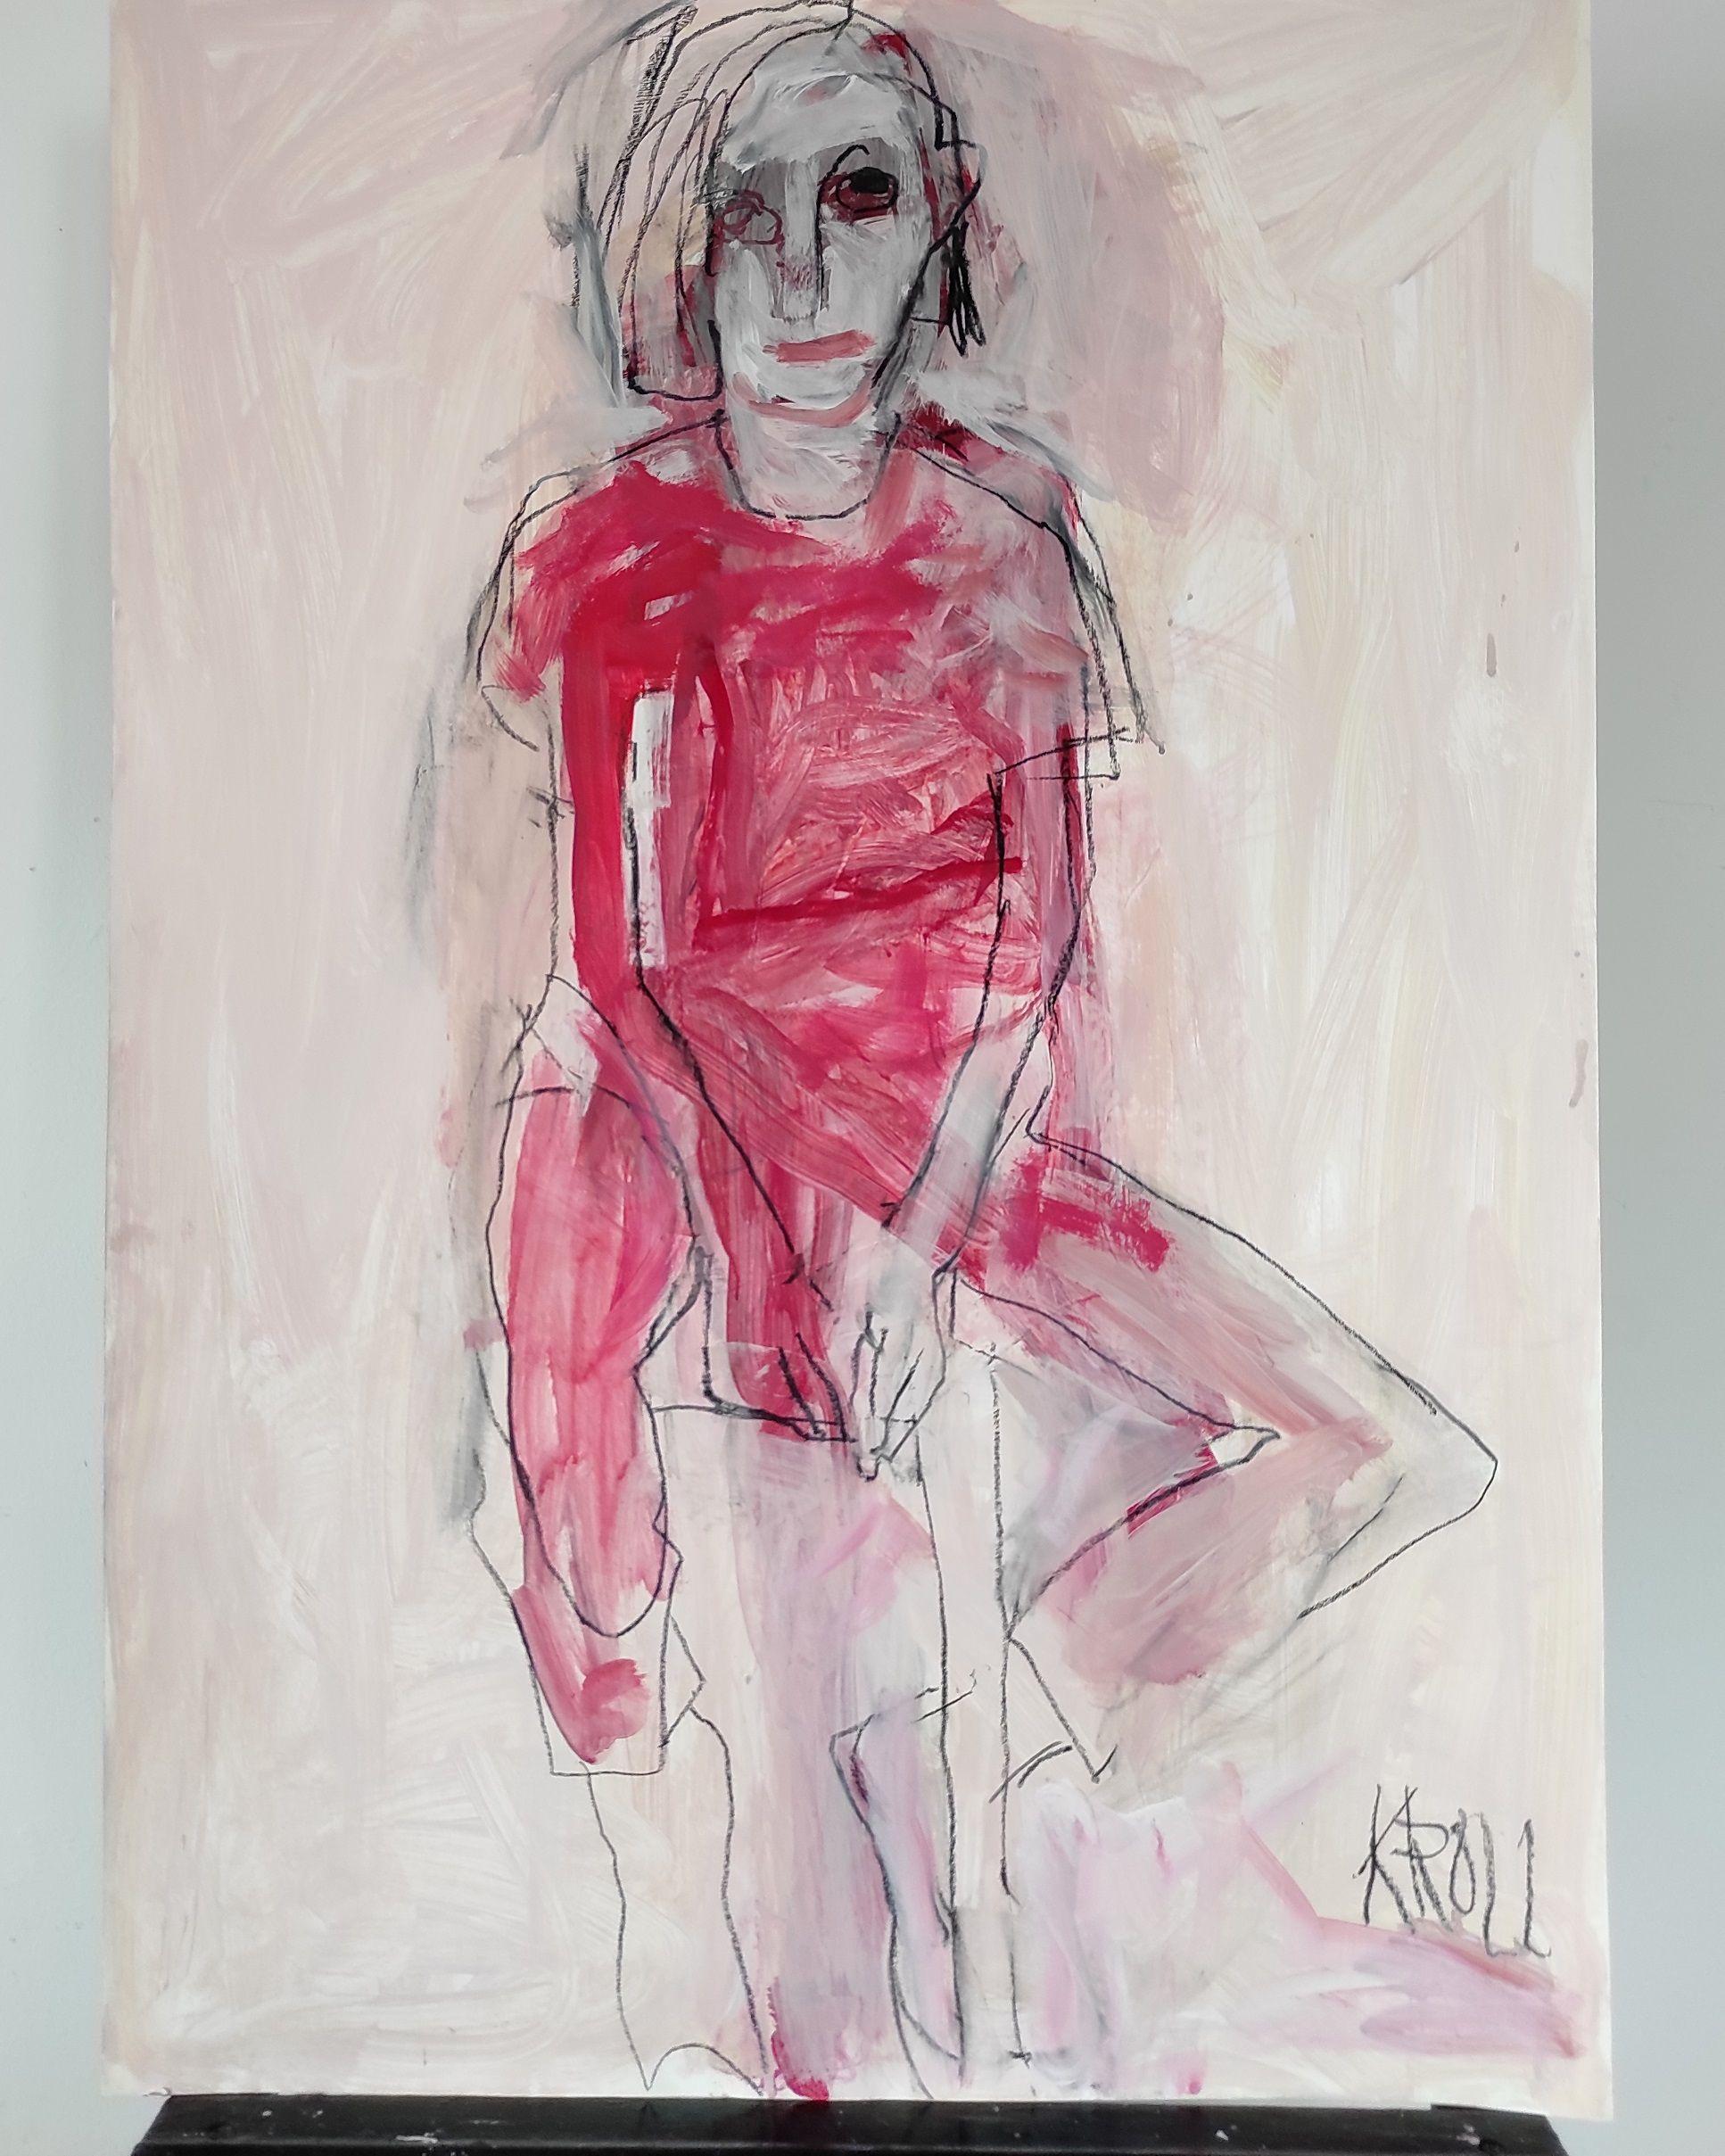 Femme assise en robe rouge, dessin, crayon/crayon coloré sur papier - Expressionniste Art par Barbara Kroll